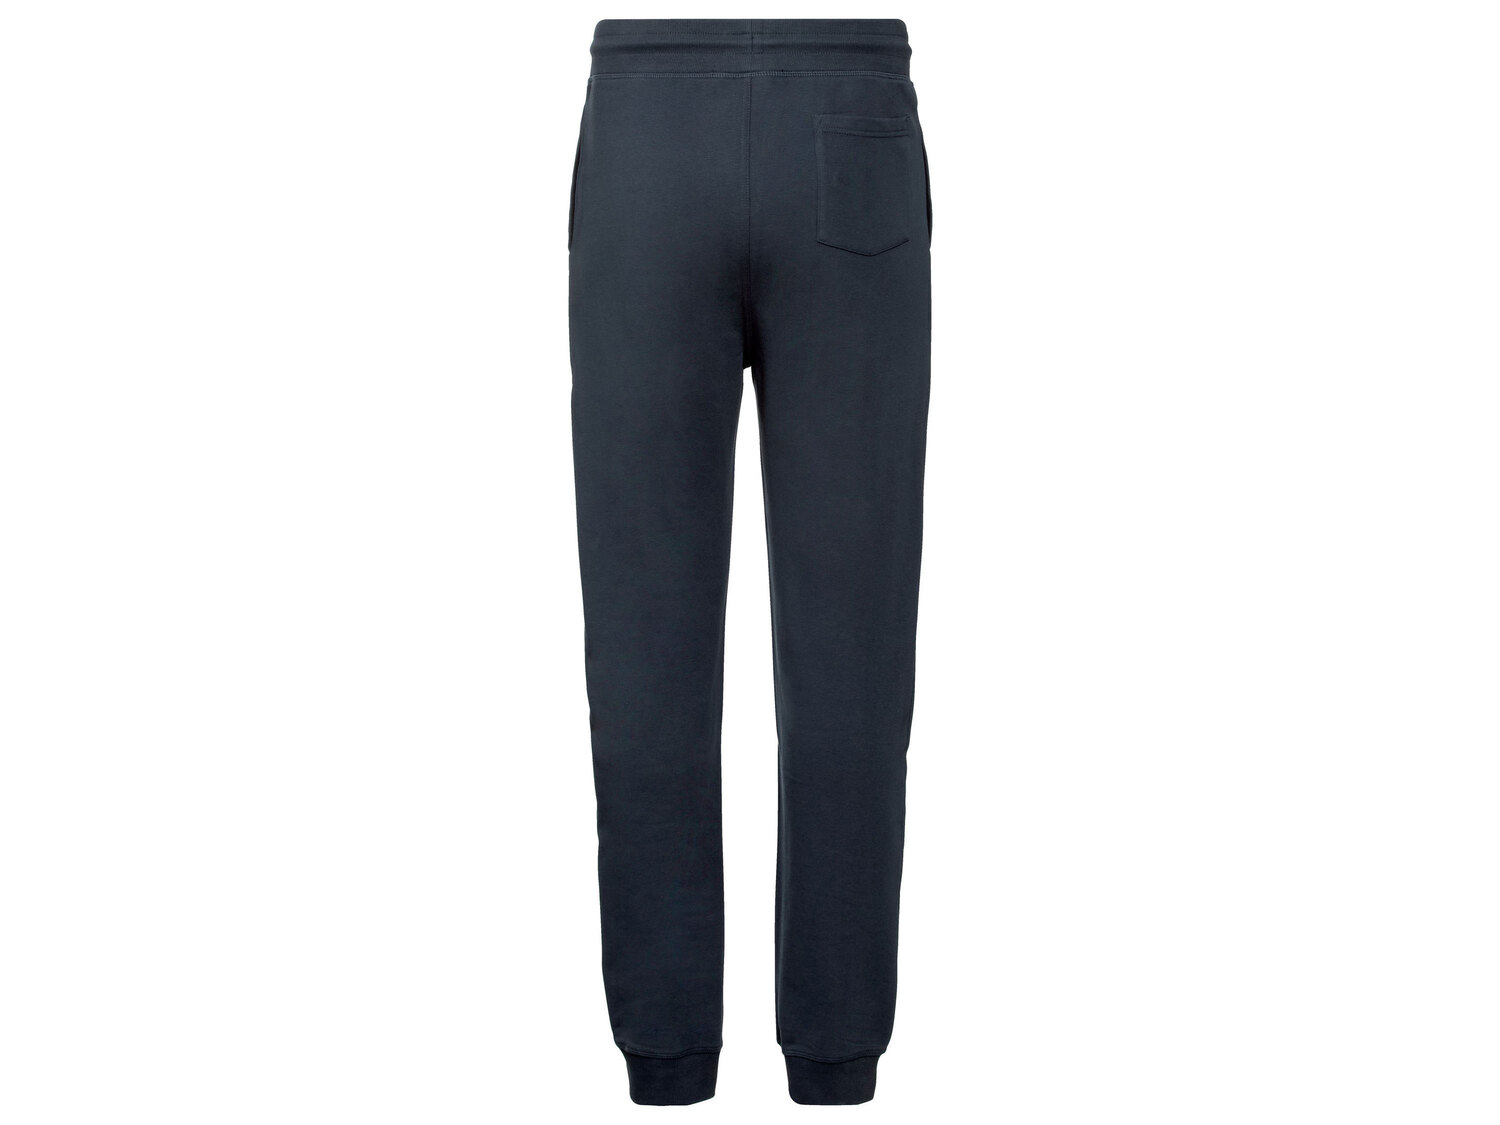 Spodnie dresowe męskie , cena 39,99 PLN 
- 80% bawełny, 20% poliestru
- rozmiary: ...